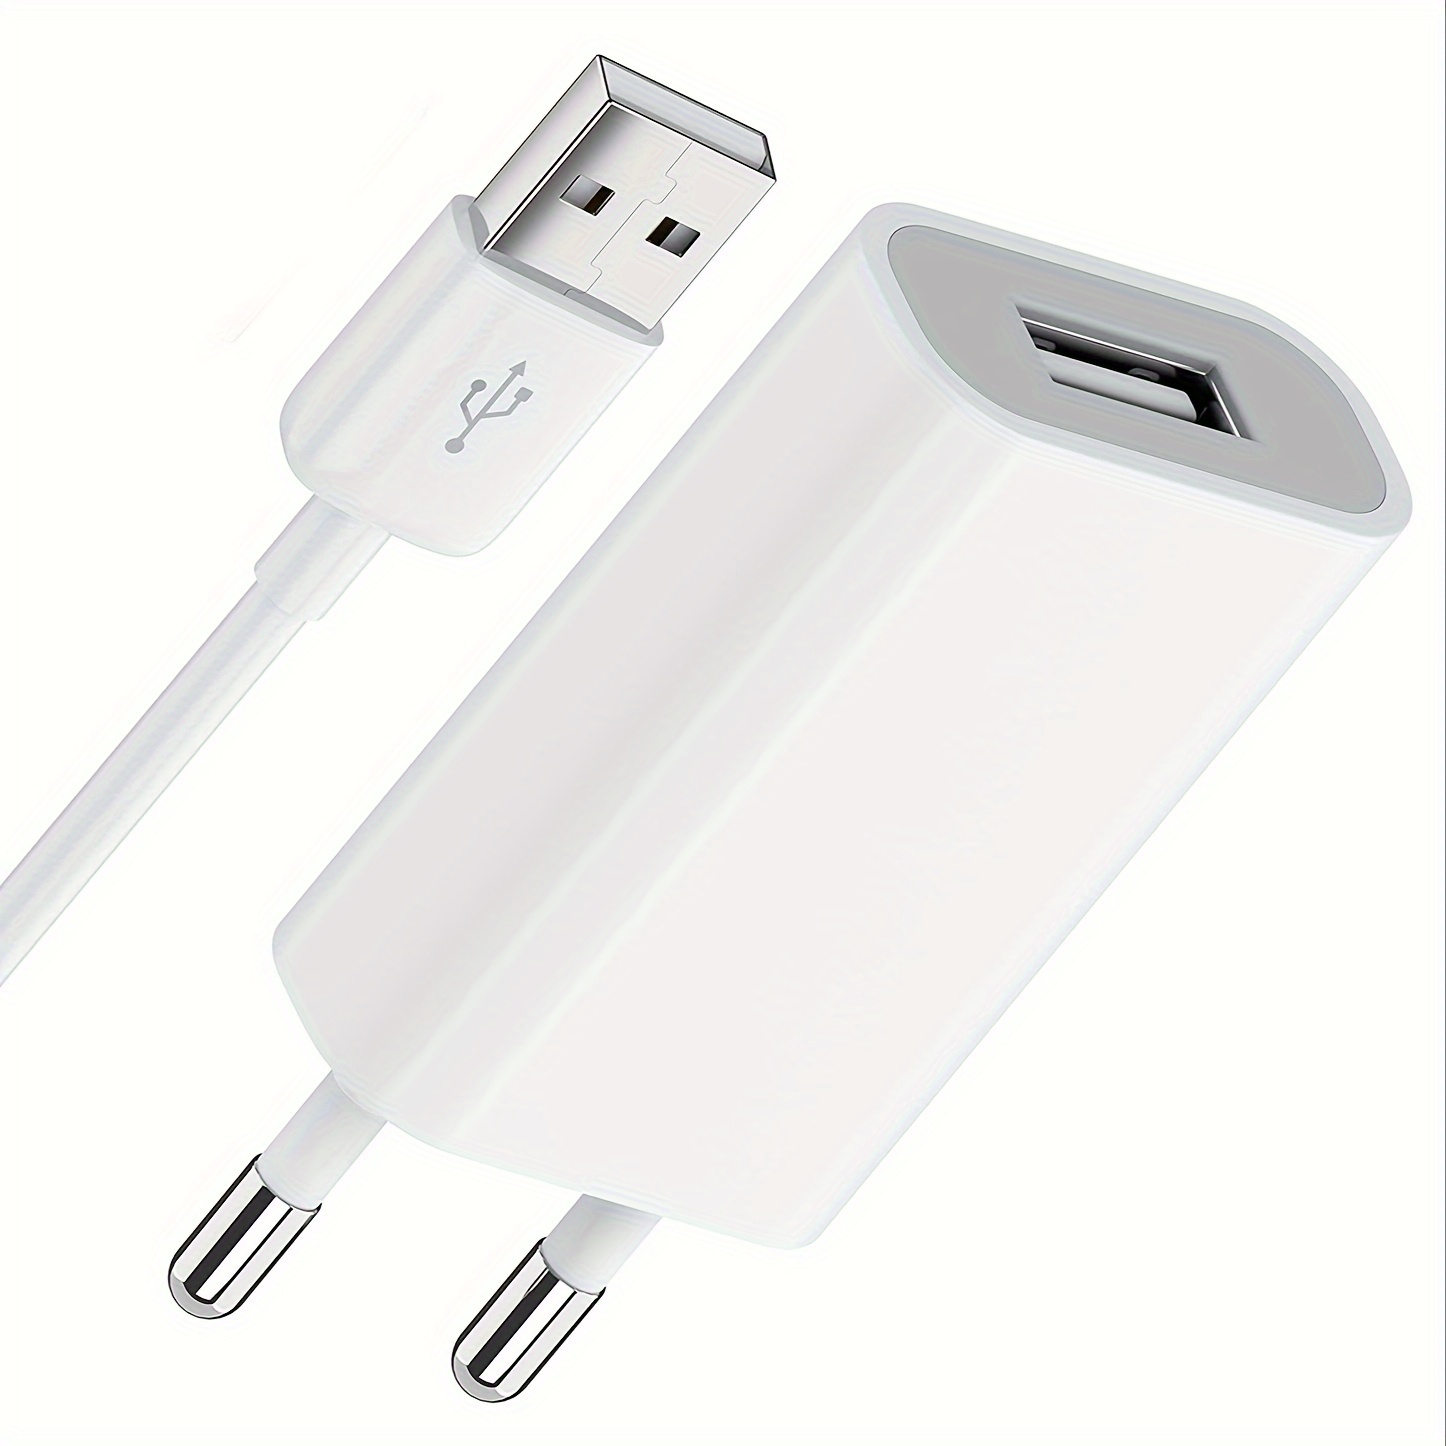 Nouveau chargeur USB prise ue 2A Europe chargeur universel de téléphone  portable adaptateur USB chargeur mural pour iPhone 5 6 7 6S Plus Charge 50